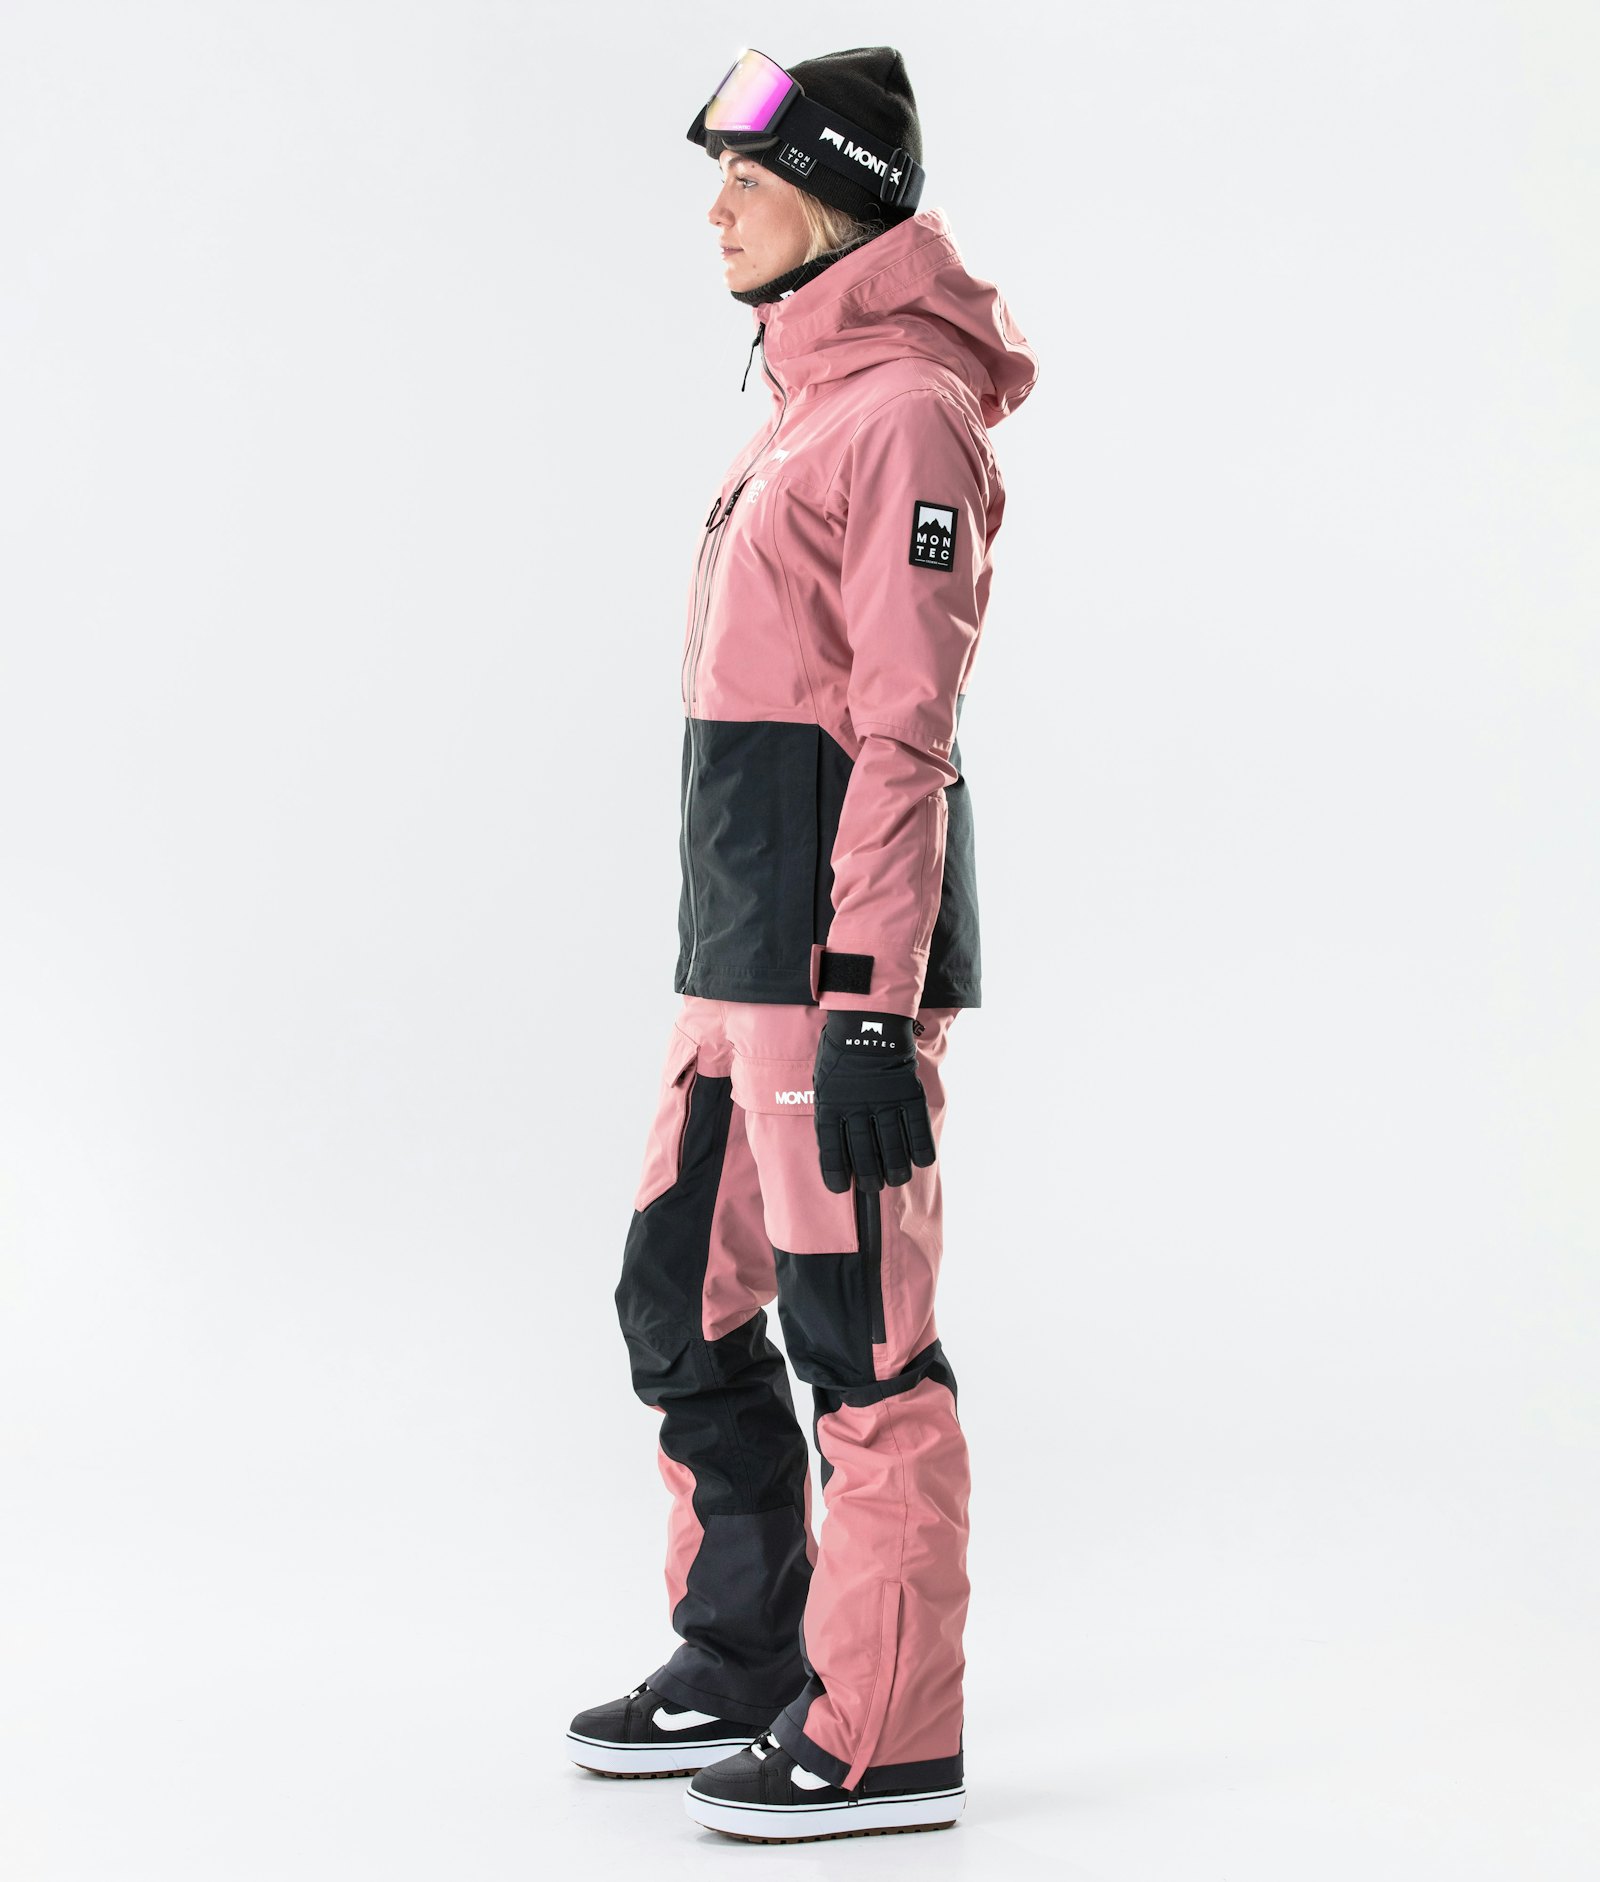 Moss W 2020 Snowboardjakke Dame Pink/Black